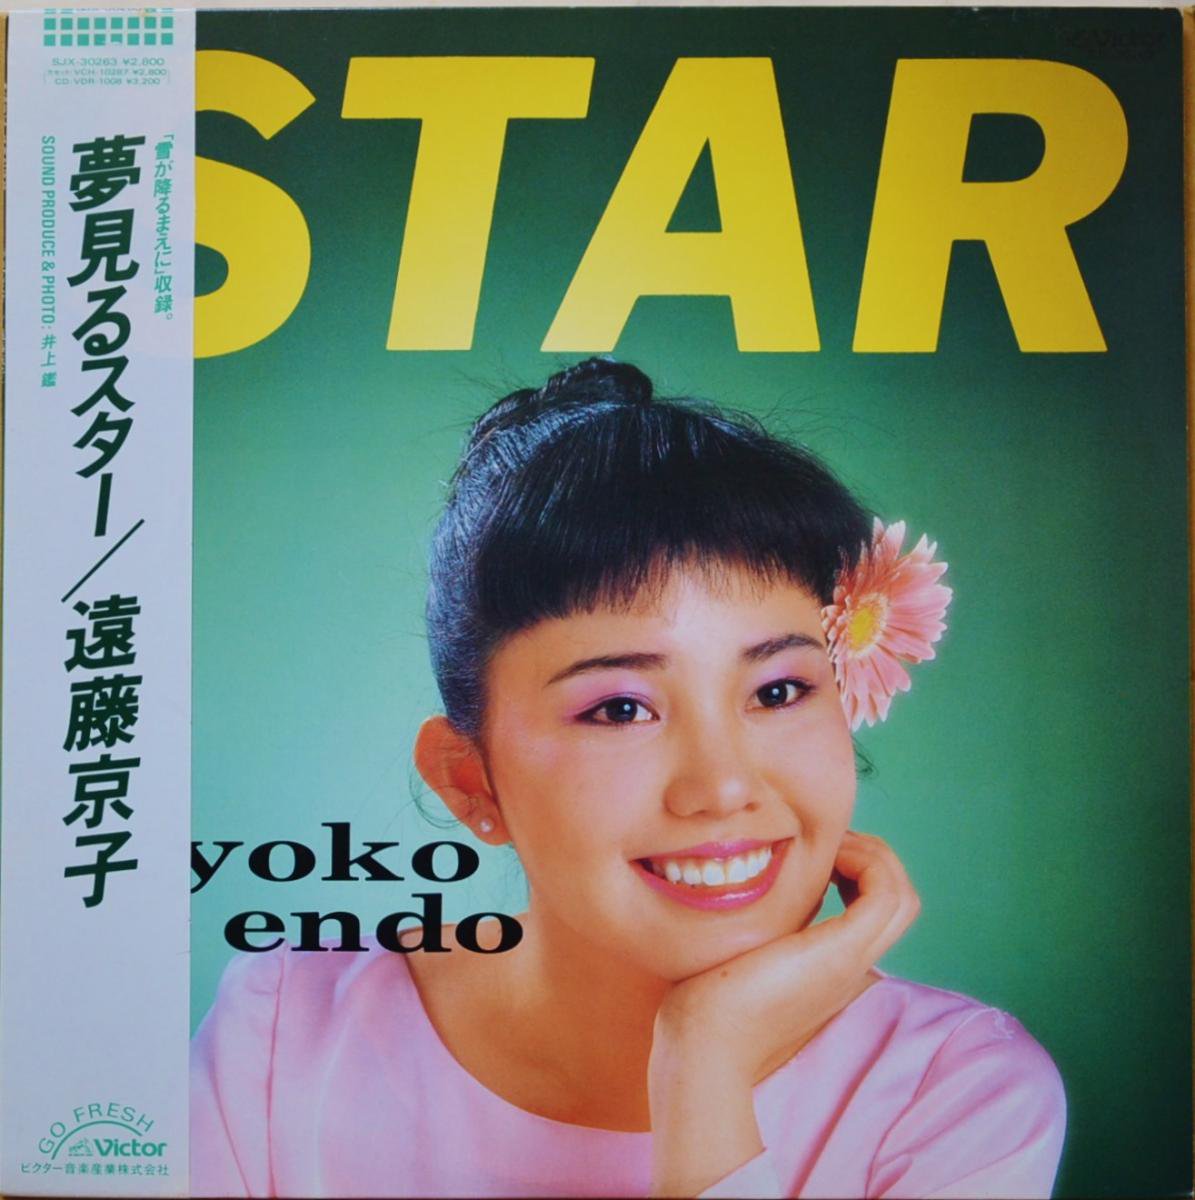 遠藤京子 KYOKO ENDO / 夢見るスター STAR (LP)